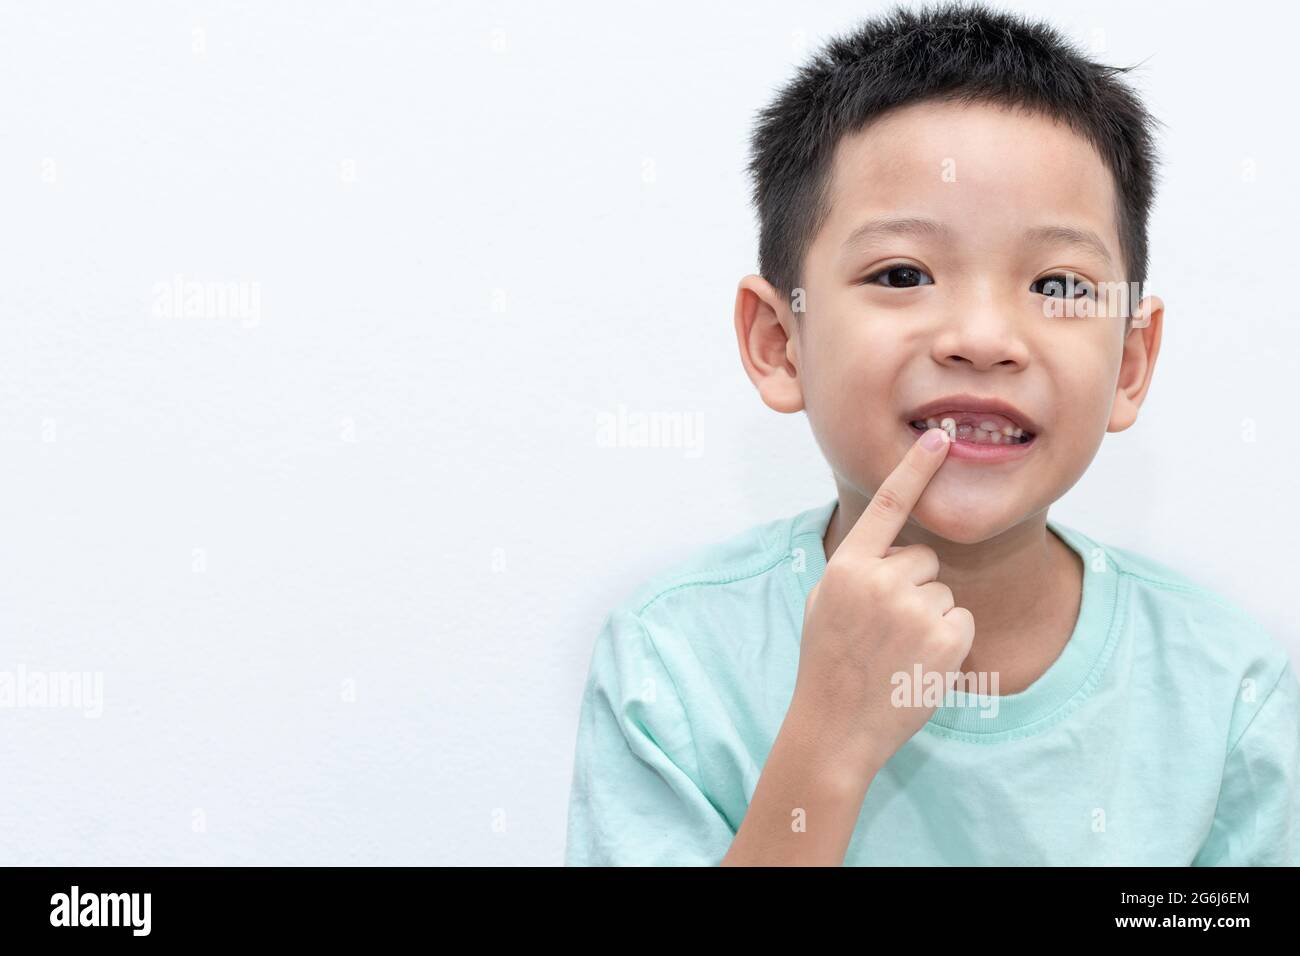 Le petit garçon asiatique pointait vers ses dents permanentes est en pleine croissance. Un garçon de 5 ans dont l'incisive supérieure de la dent de lait est tombée. Spectacle de bouche ouverte pour enfants heureux Banque D'Images